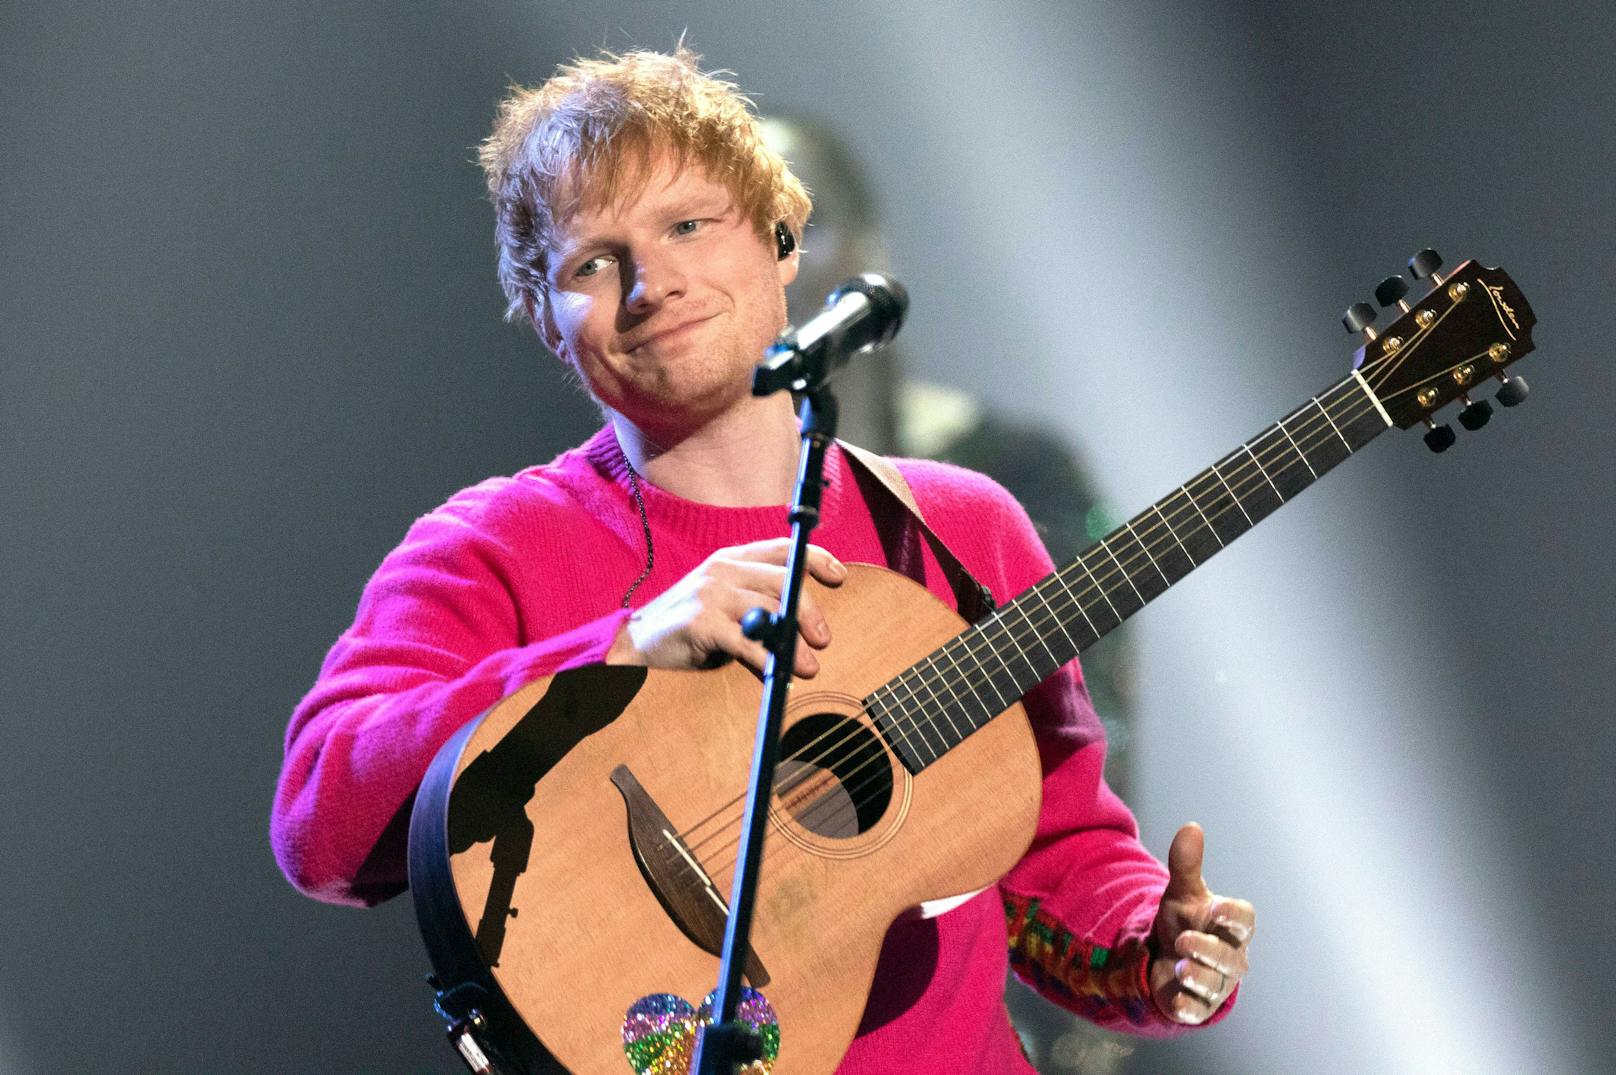 Medienberichten zufolge, wird auch Ed Sheeran auf die Krönung von Charles verzichten.